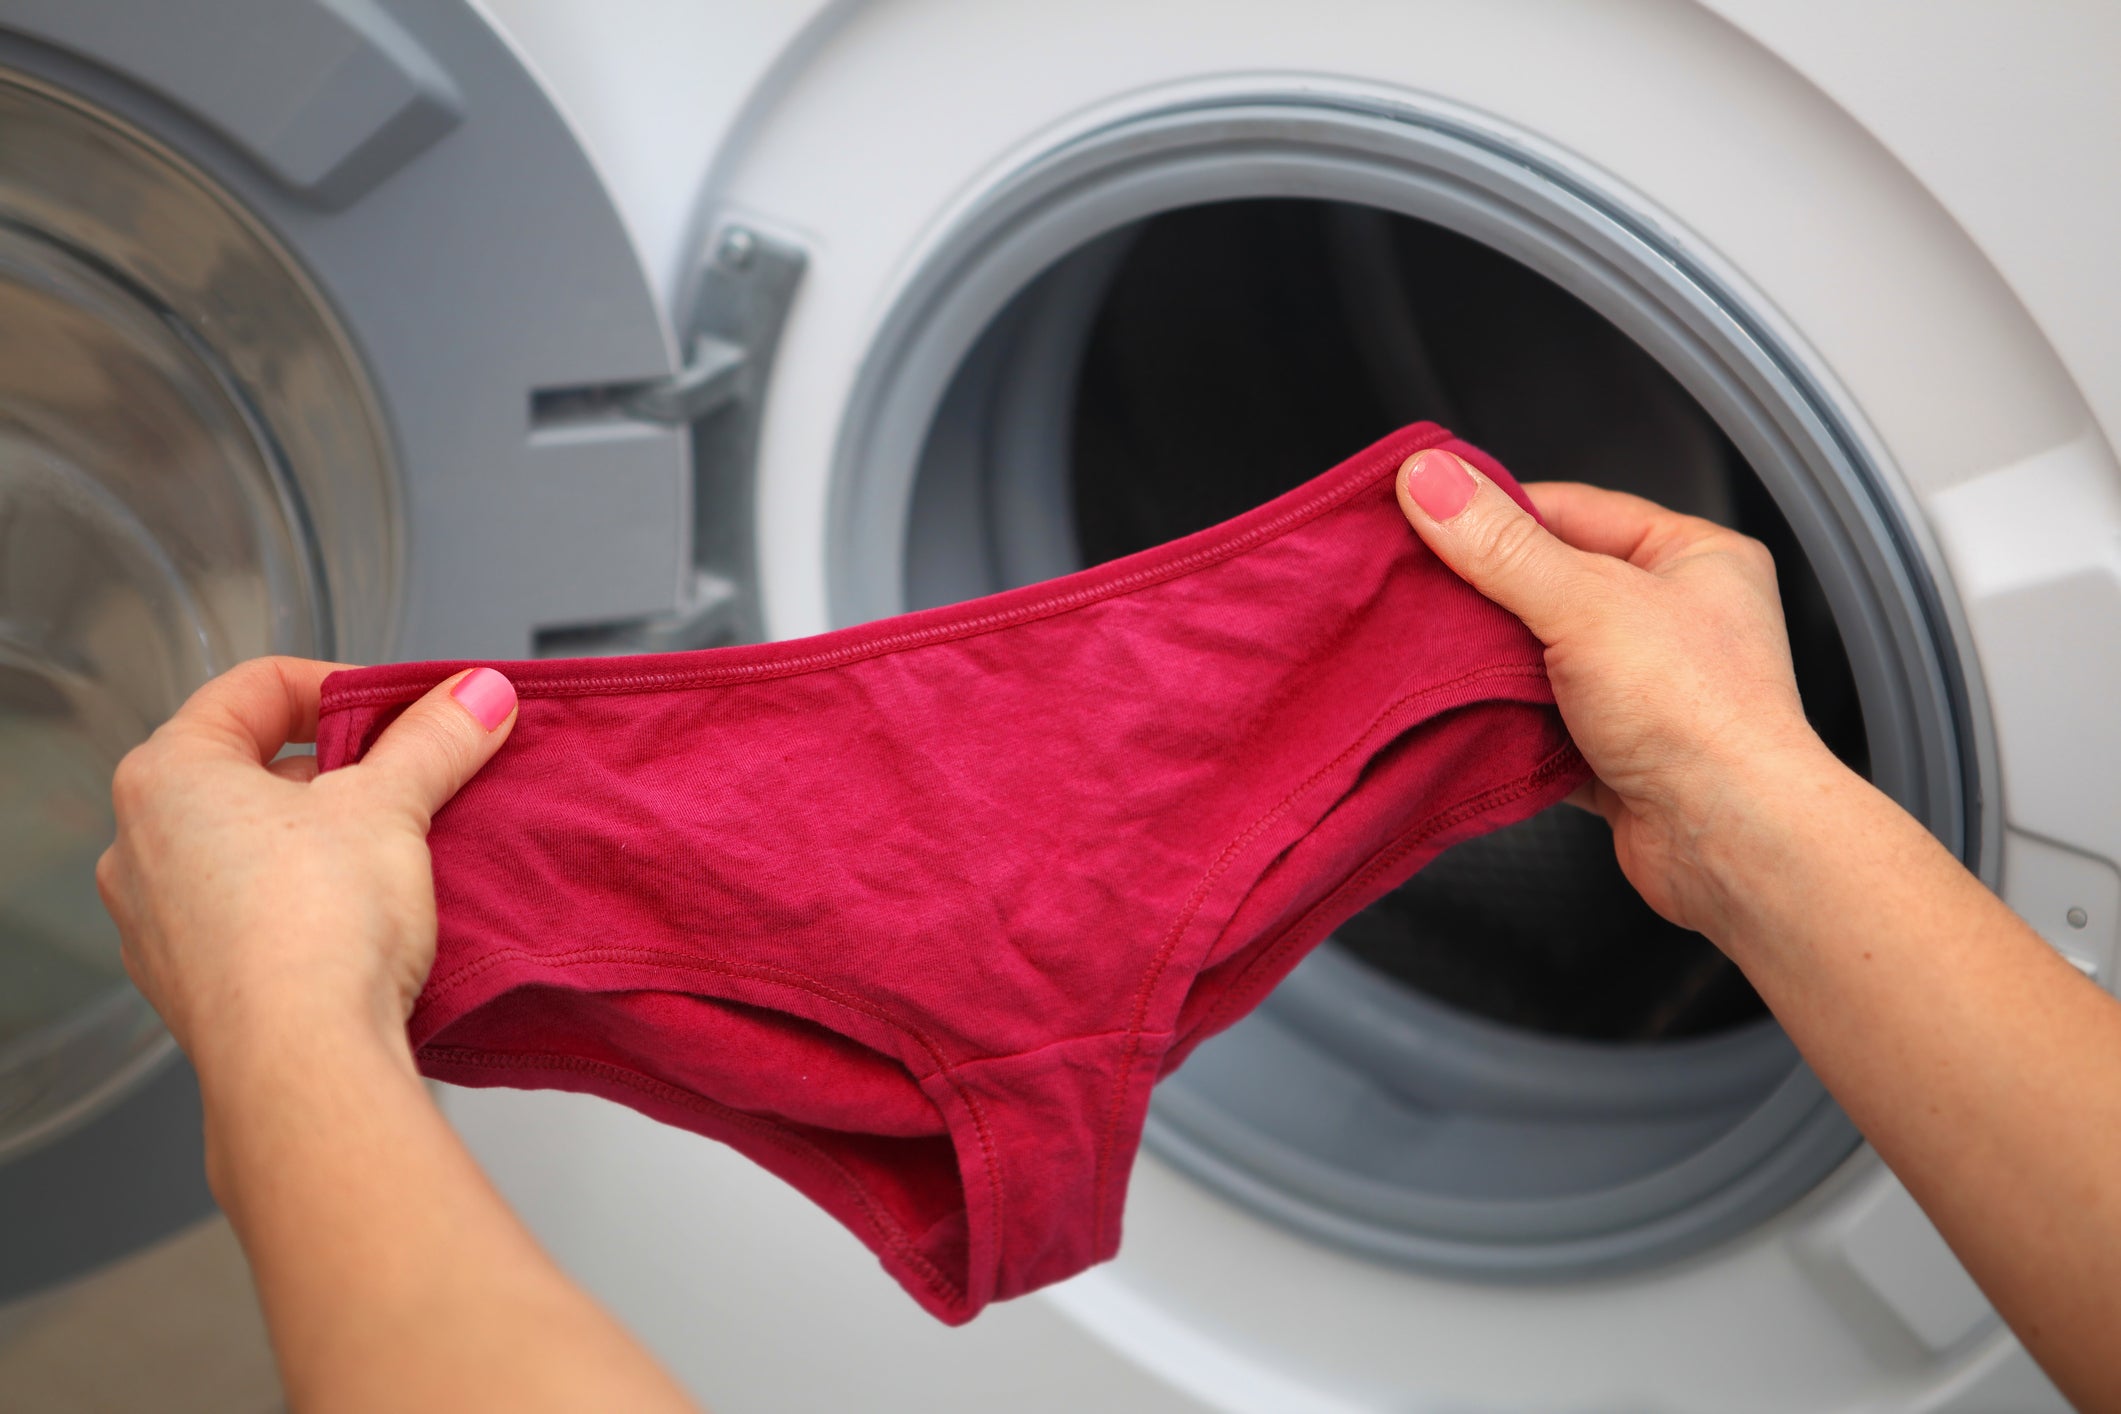 Máquina de lavar ropa en el interior de la lavandería